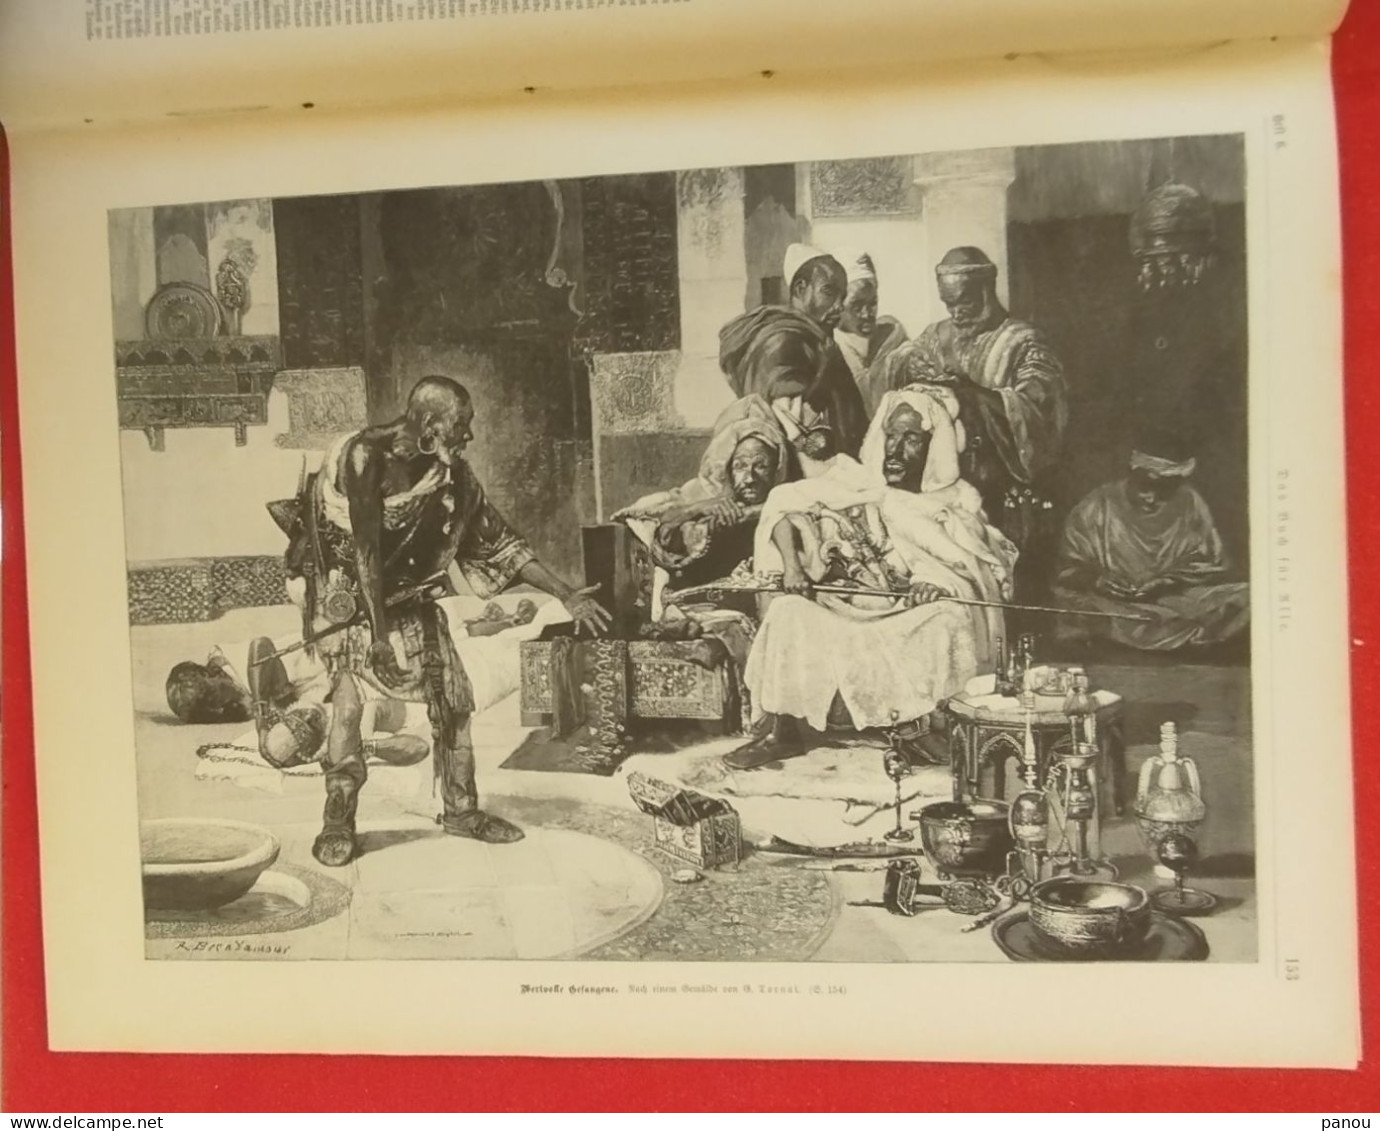 Das Buch für Alle 1899 Nr 6. COLORED IMAGES. FARBIGE BILDER. SUDAN